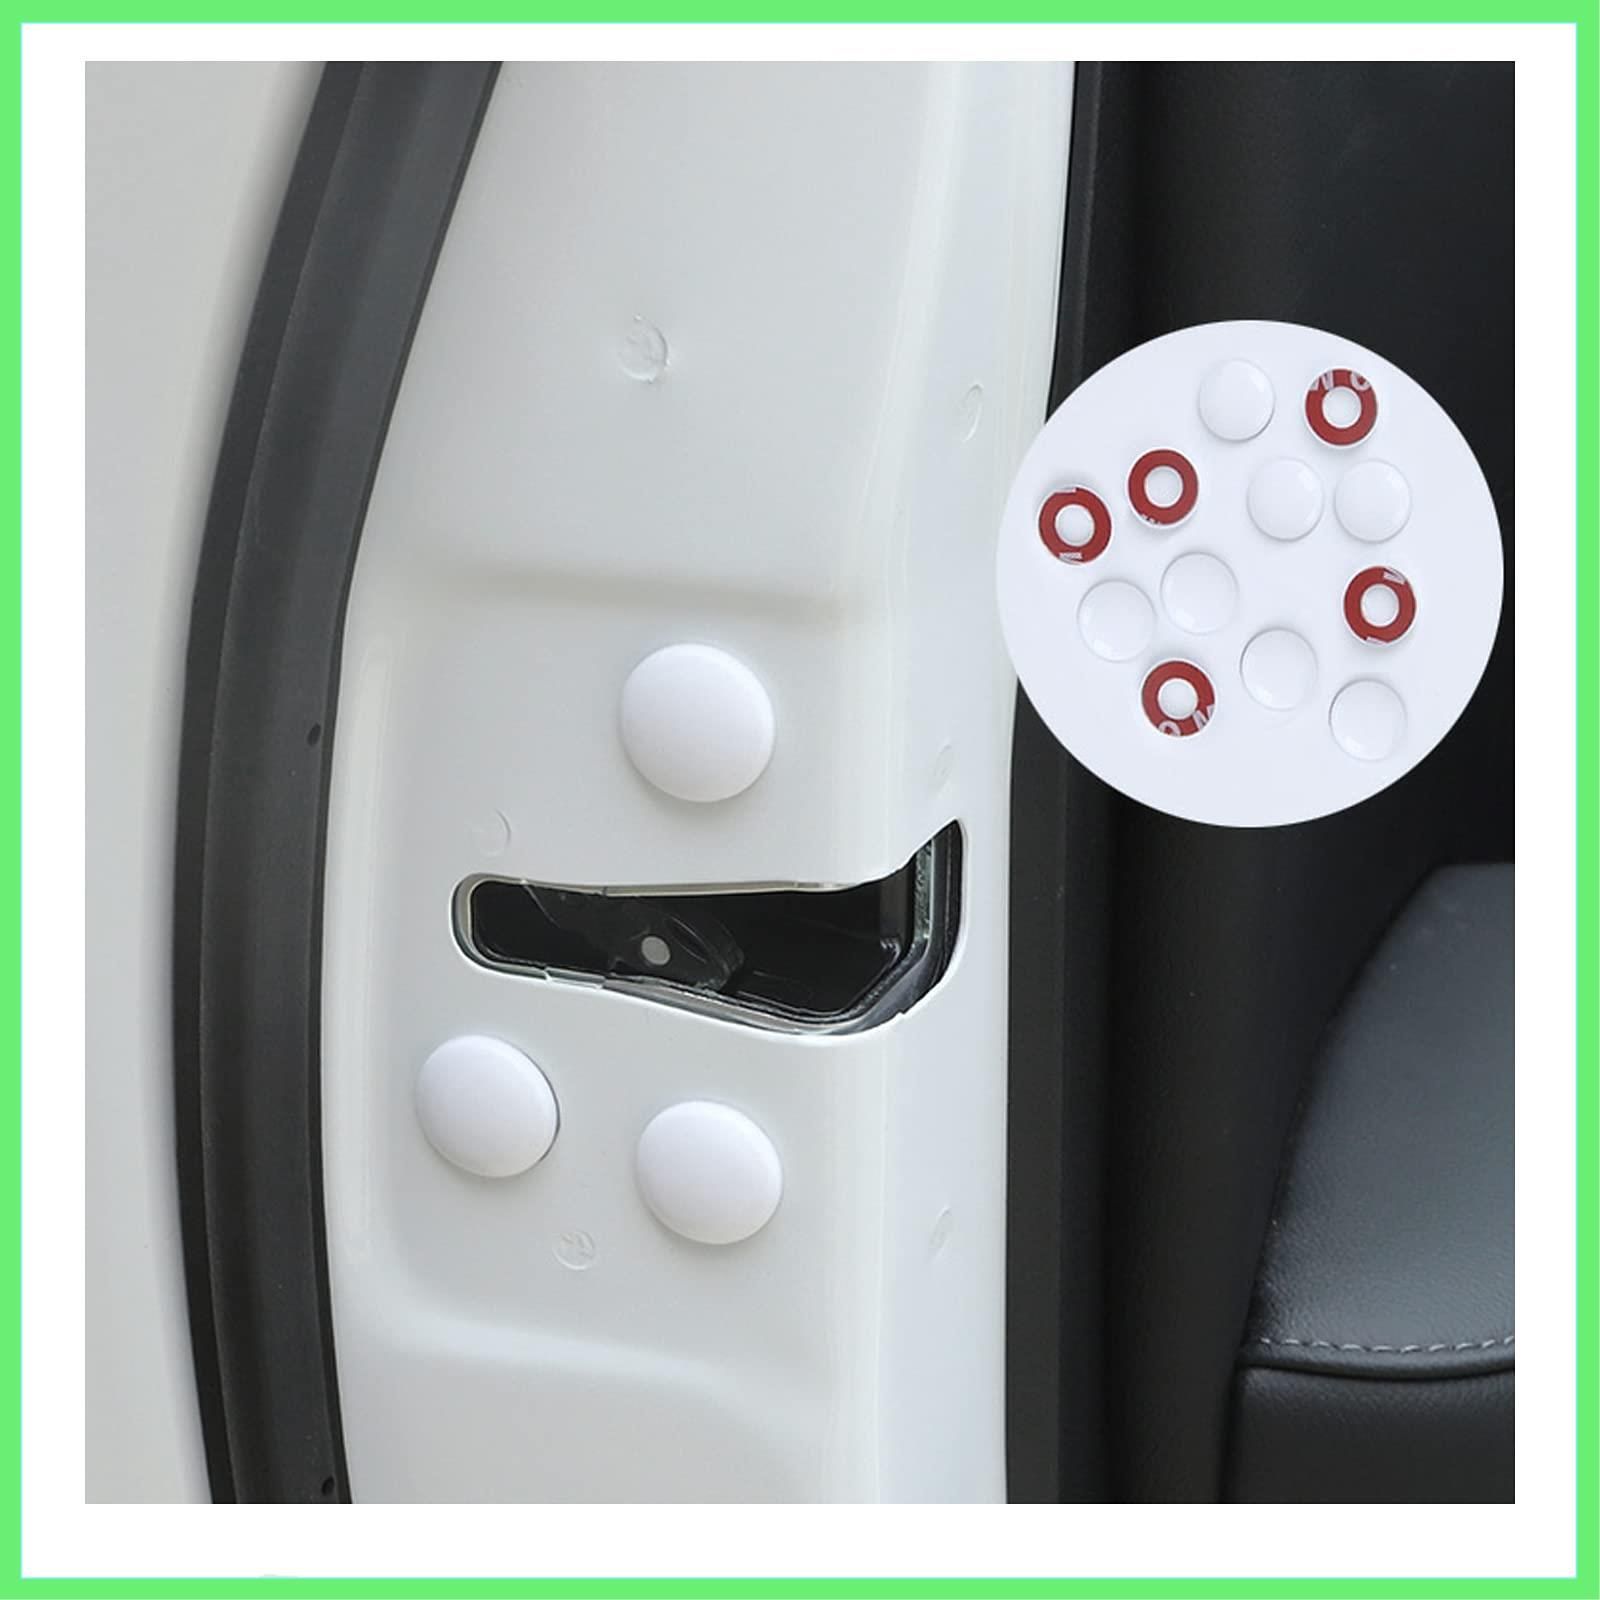 白 ドアネジ保護キャップ保護 ドアネジカバー 防水 錆防止 取り付け簡単 防雨 - 6